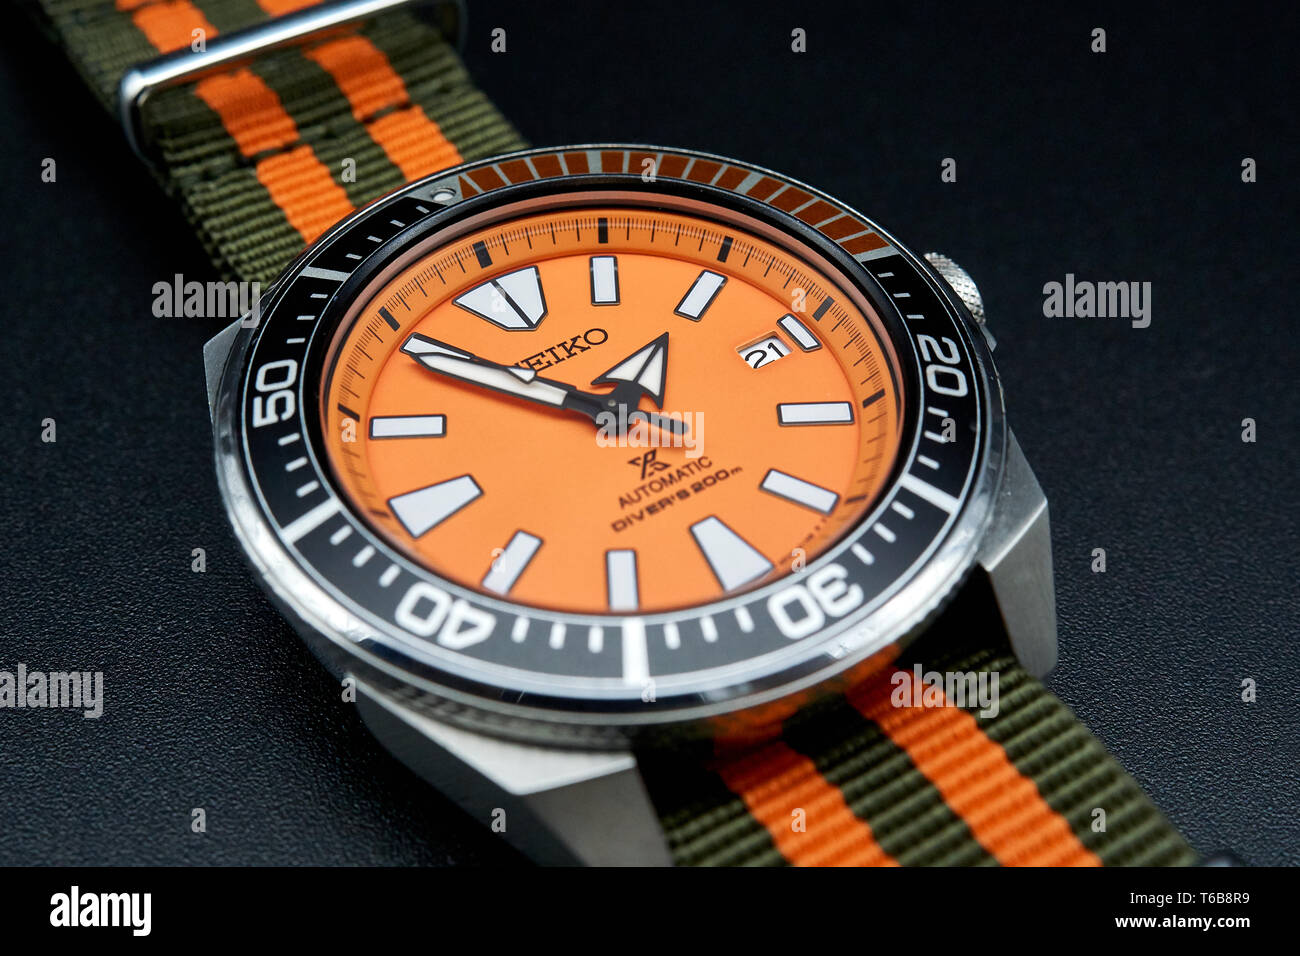 Seiko samurai diver watch con dial naranja Fotografía de stock - Alamy